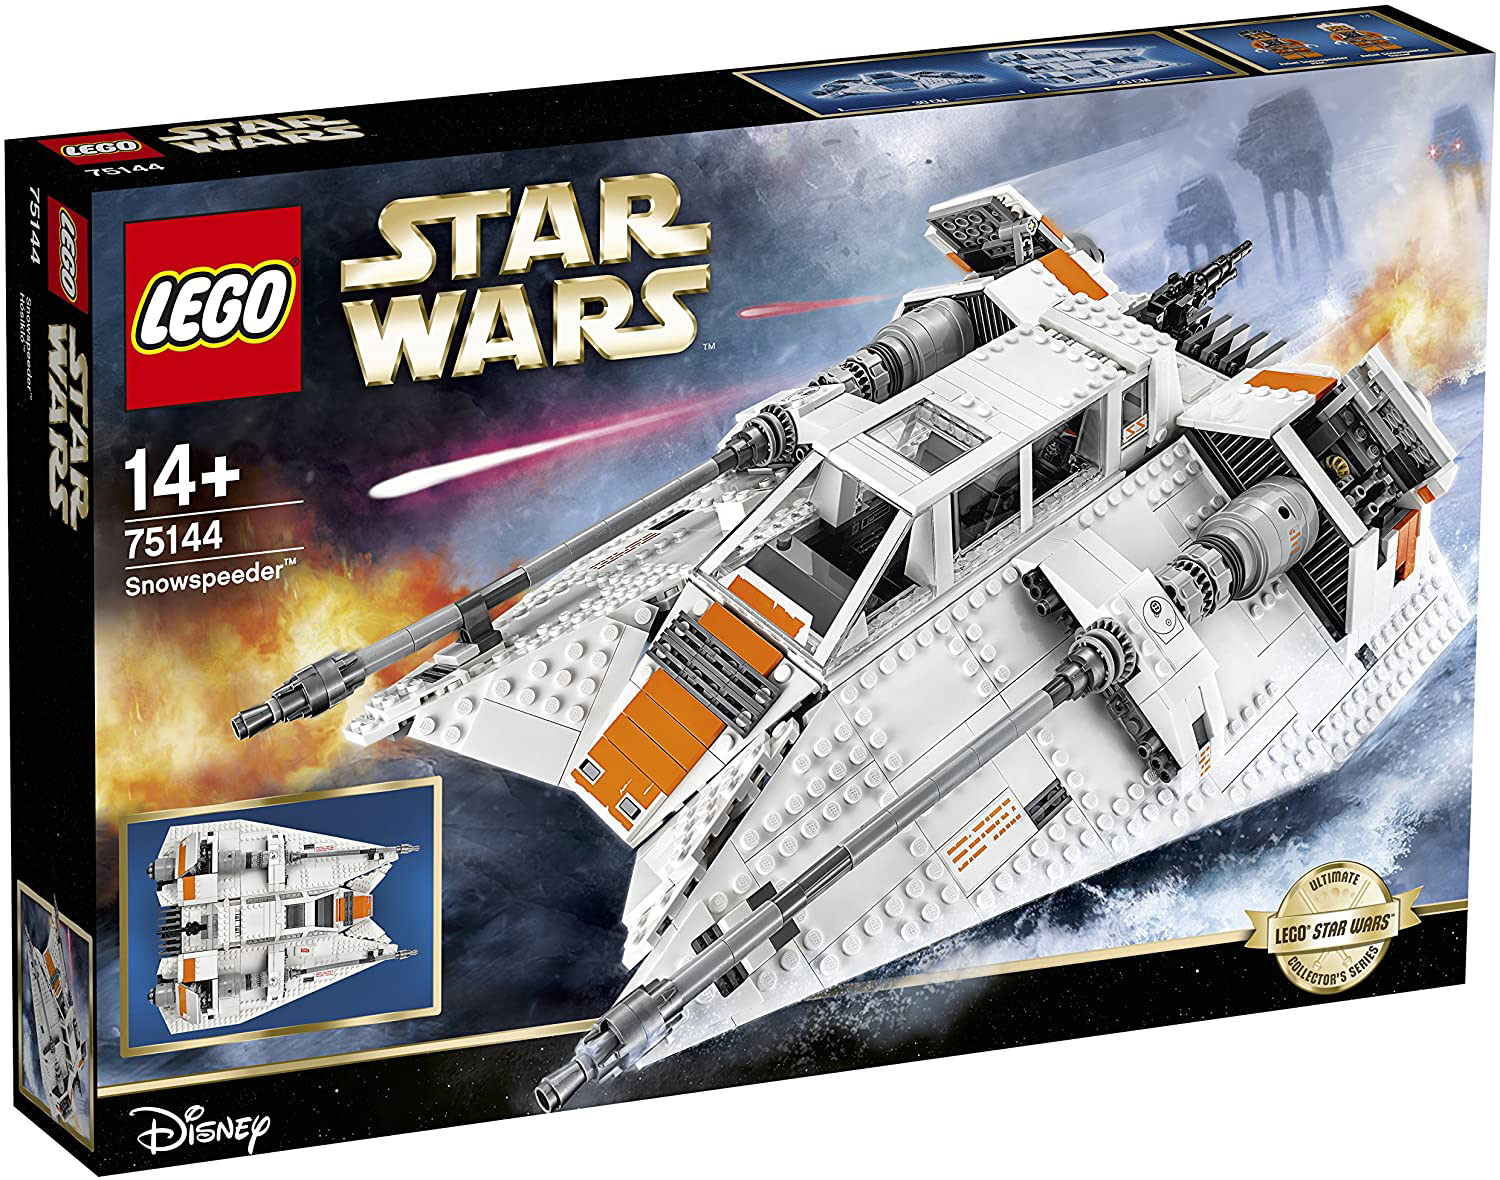 Immagine relativa a LEGO Star Wars 75144 Snowspeeder™